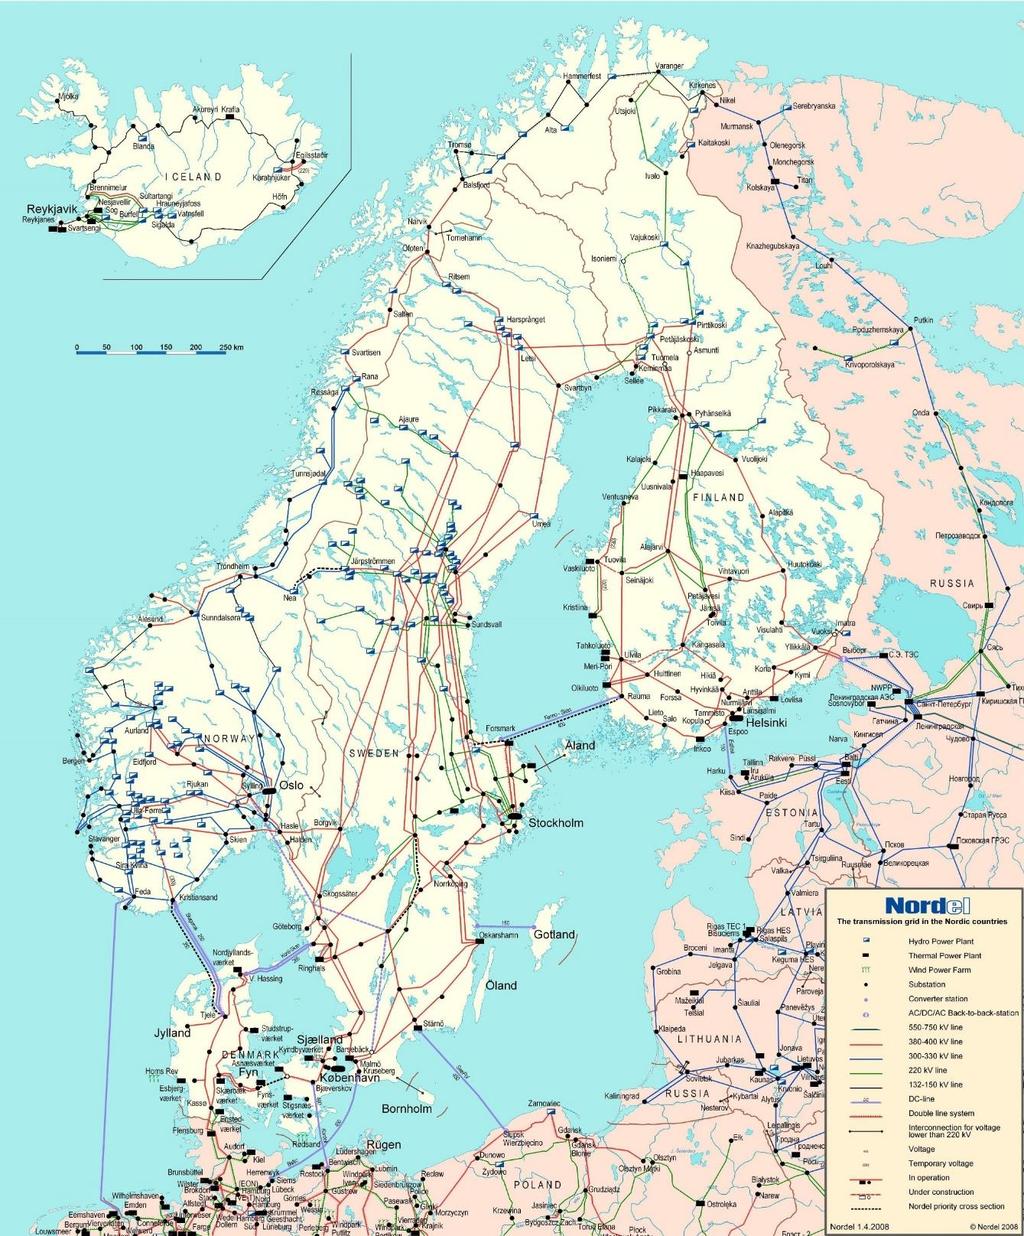 Gode vindressurser, mangel på infrastruktur - Styrke mellomlandsforbindelser - Sverige vil helst bygge egen vindkraft i nord? - ACERs rolle?